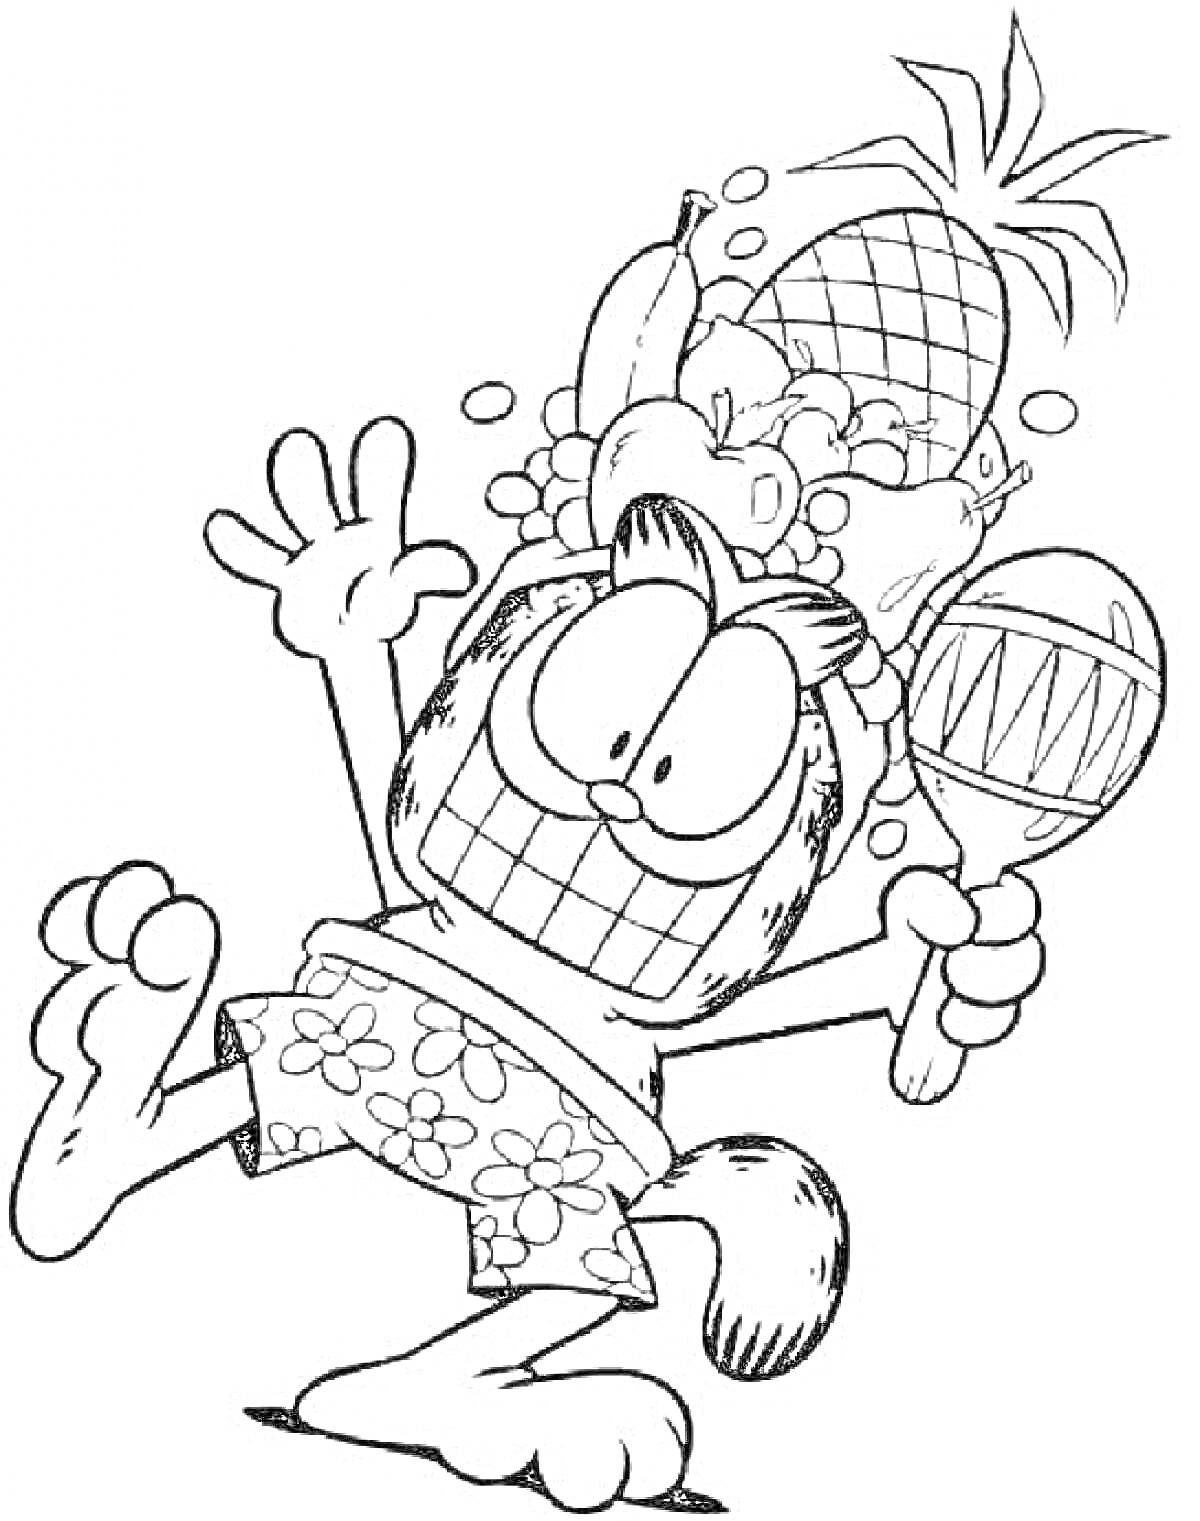 Раскраска Кот с фруктами на голове, держащий маракас, в шортах с цветочным принтом